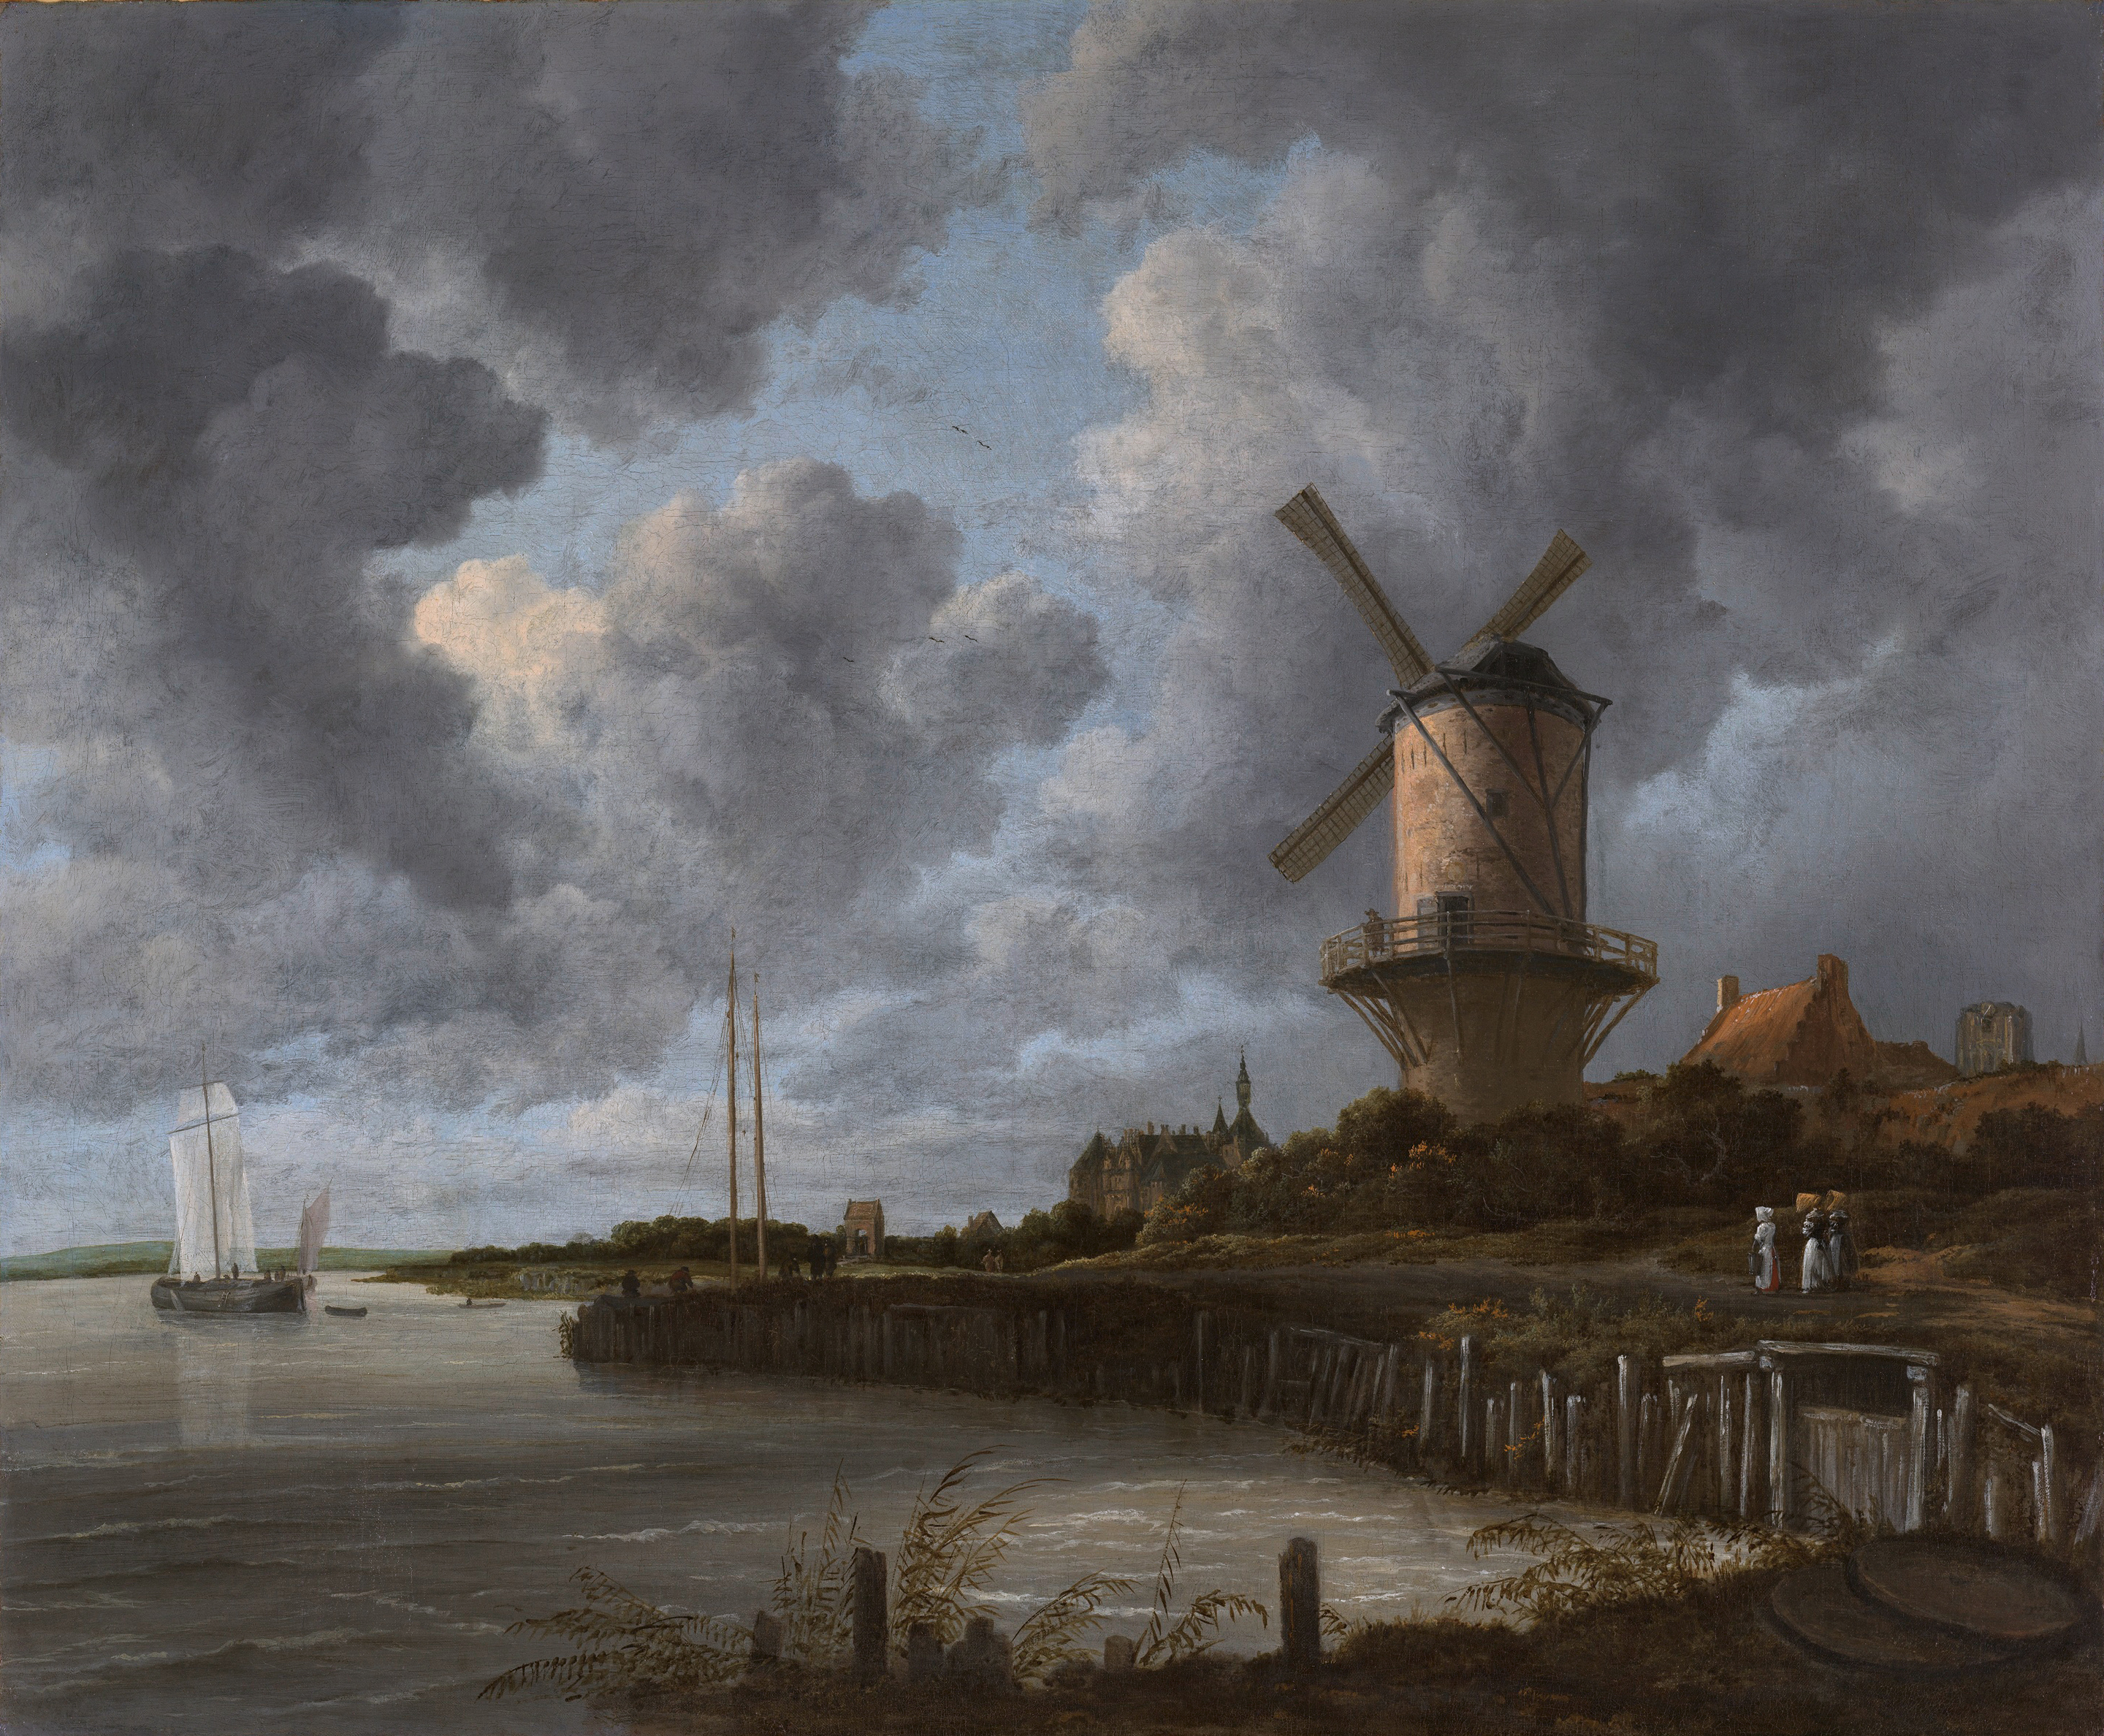 De molen bij Wijk bij Duurstede by Jacob van Ruisdael - c. 1670 - 83 x 101 cm Rijksmuseum